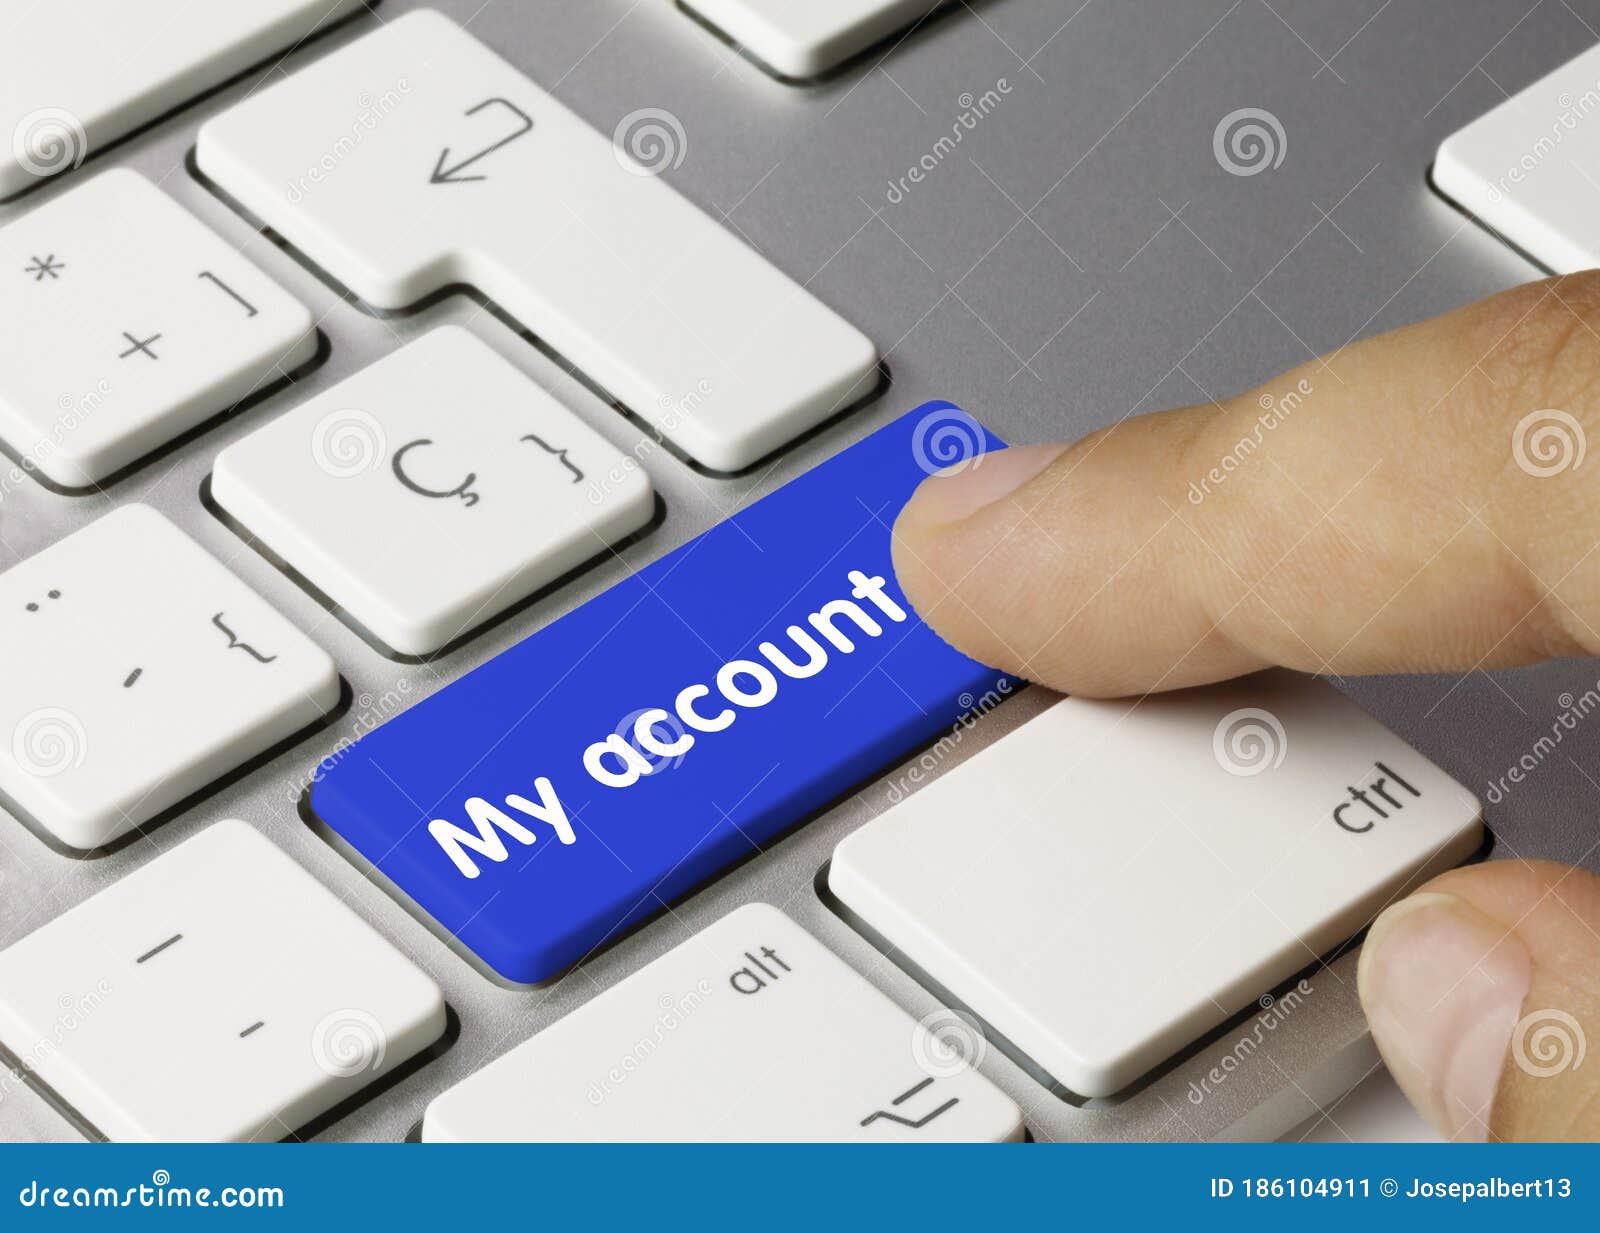 my account - inscription on blue keyboard key